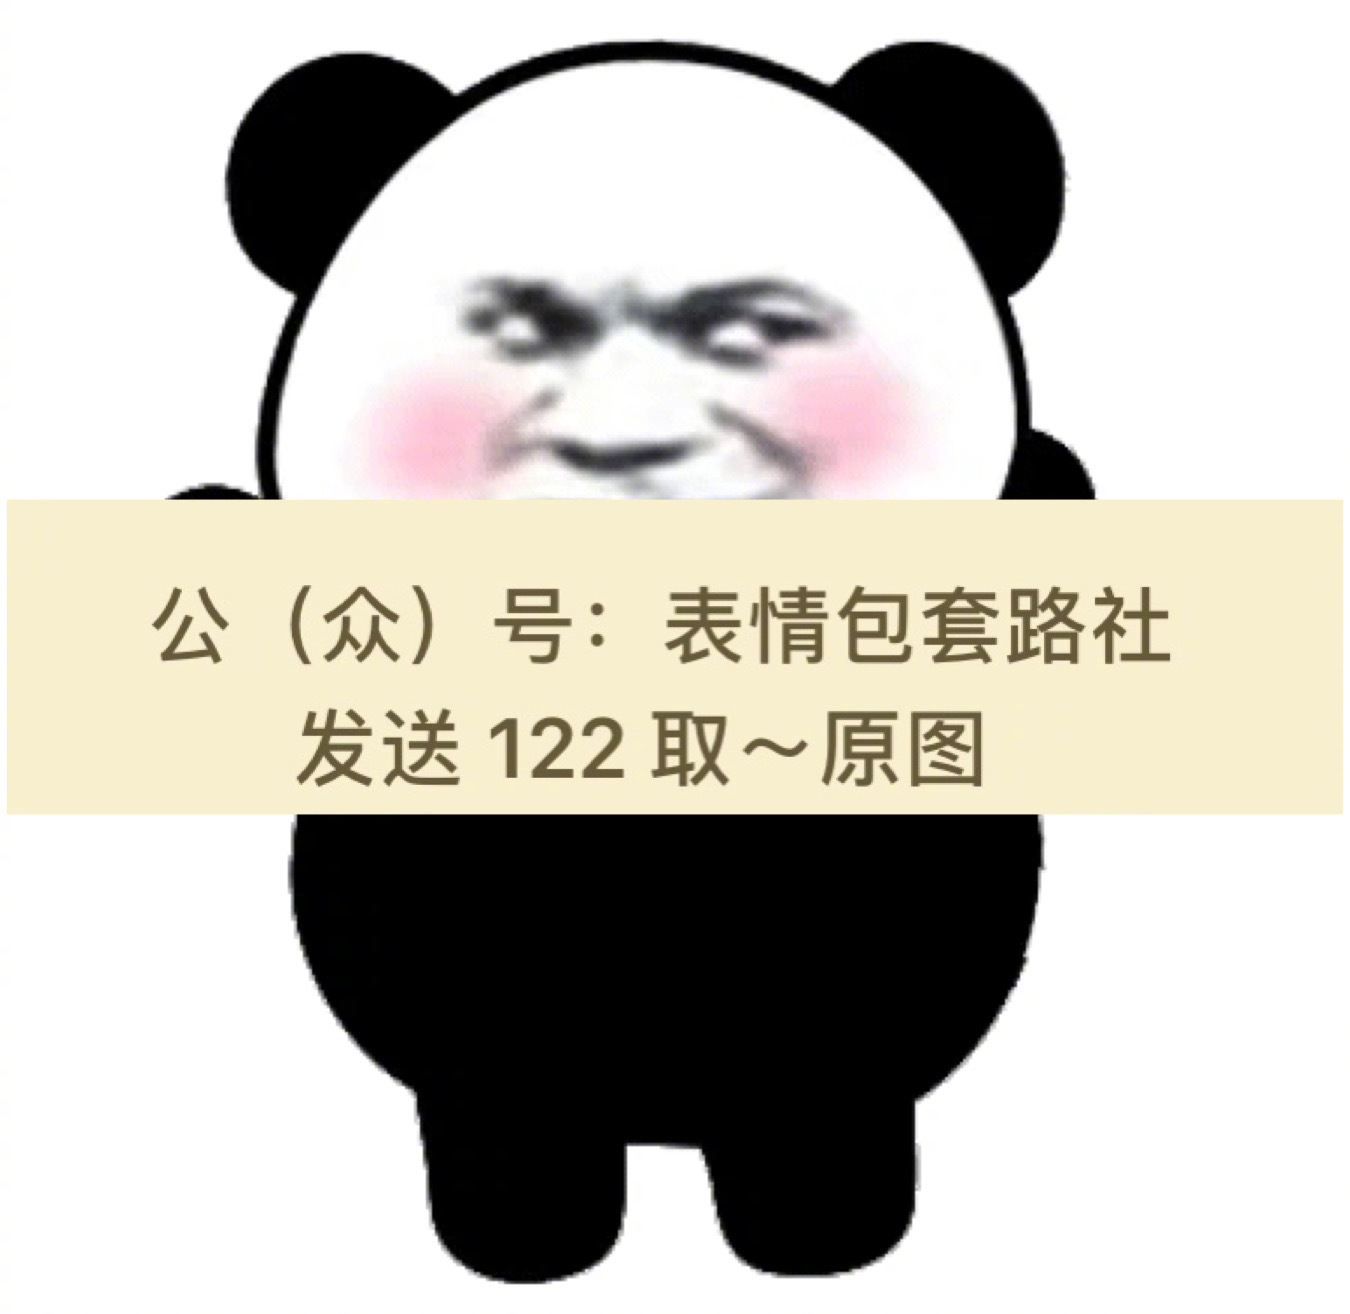 超大熊猫表情包熊猫头qq超大霸屏表情包收集了全套50张高清表情包动图